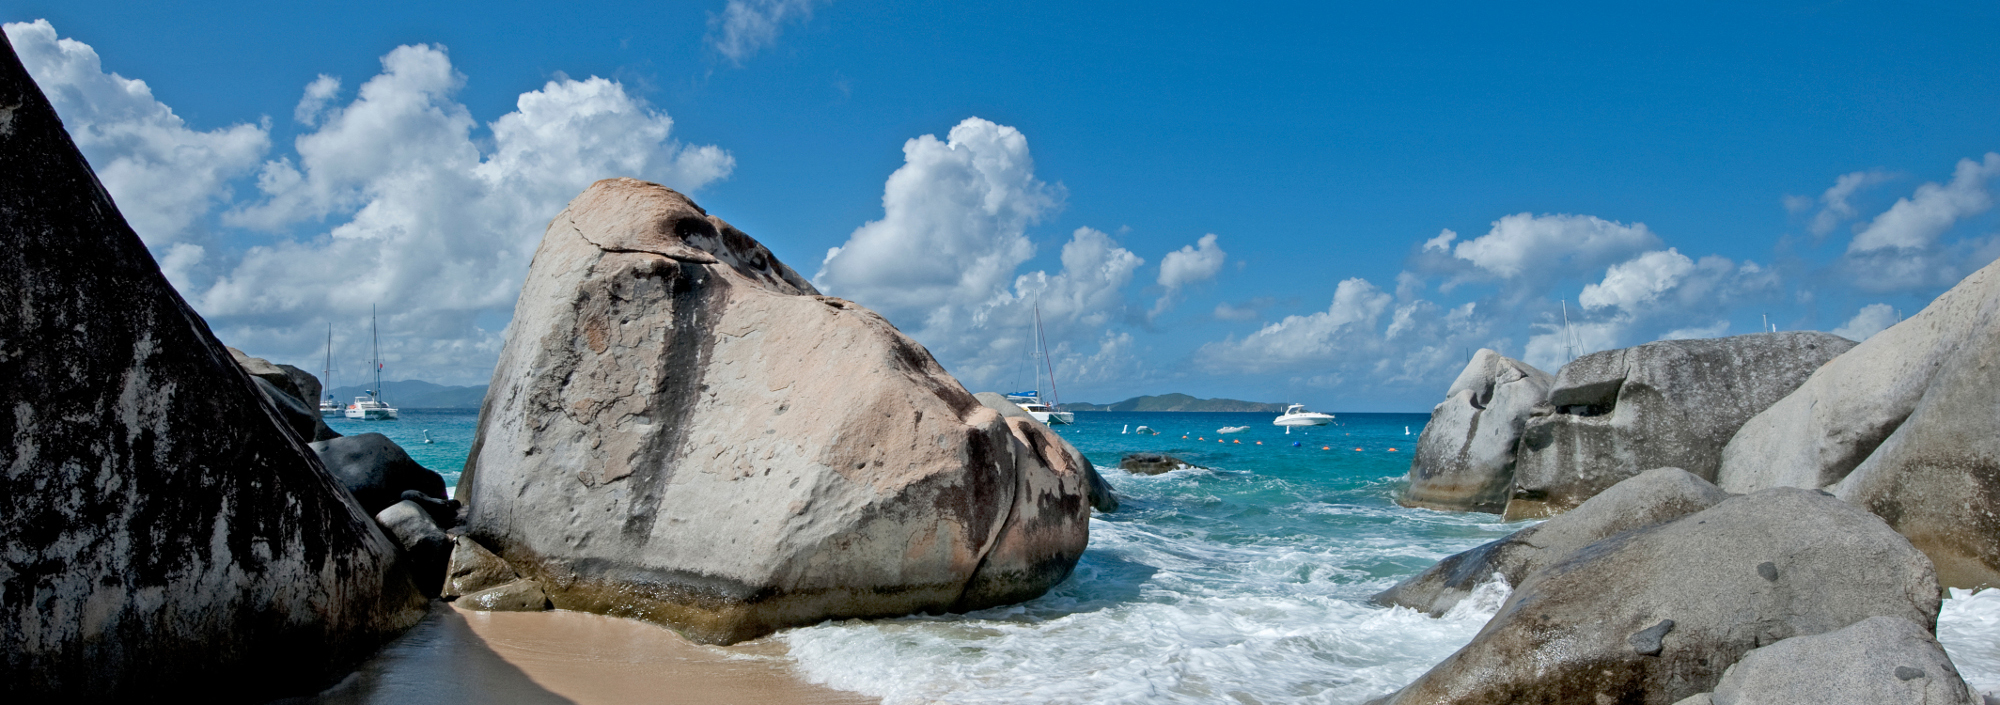 The Bath auf den British Virgin Islands mit großen Steinblöcken und weißem Sandstrand